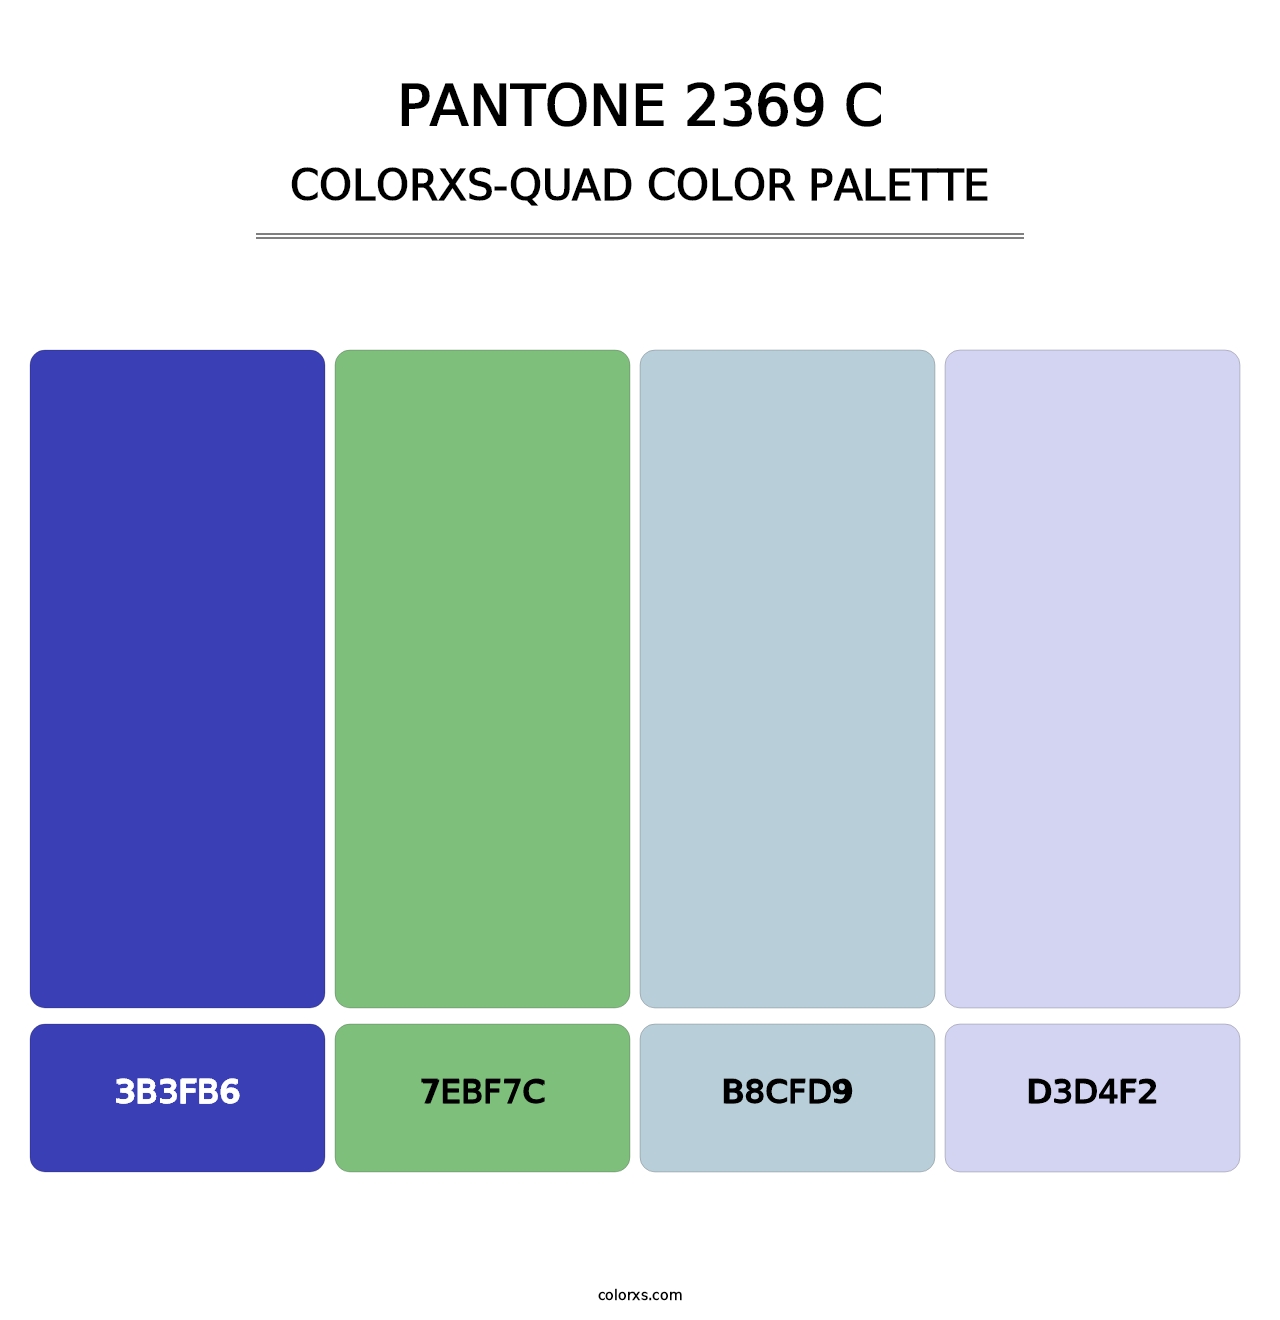 PANTONE 2369 C - Colorxs Quad Palette